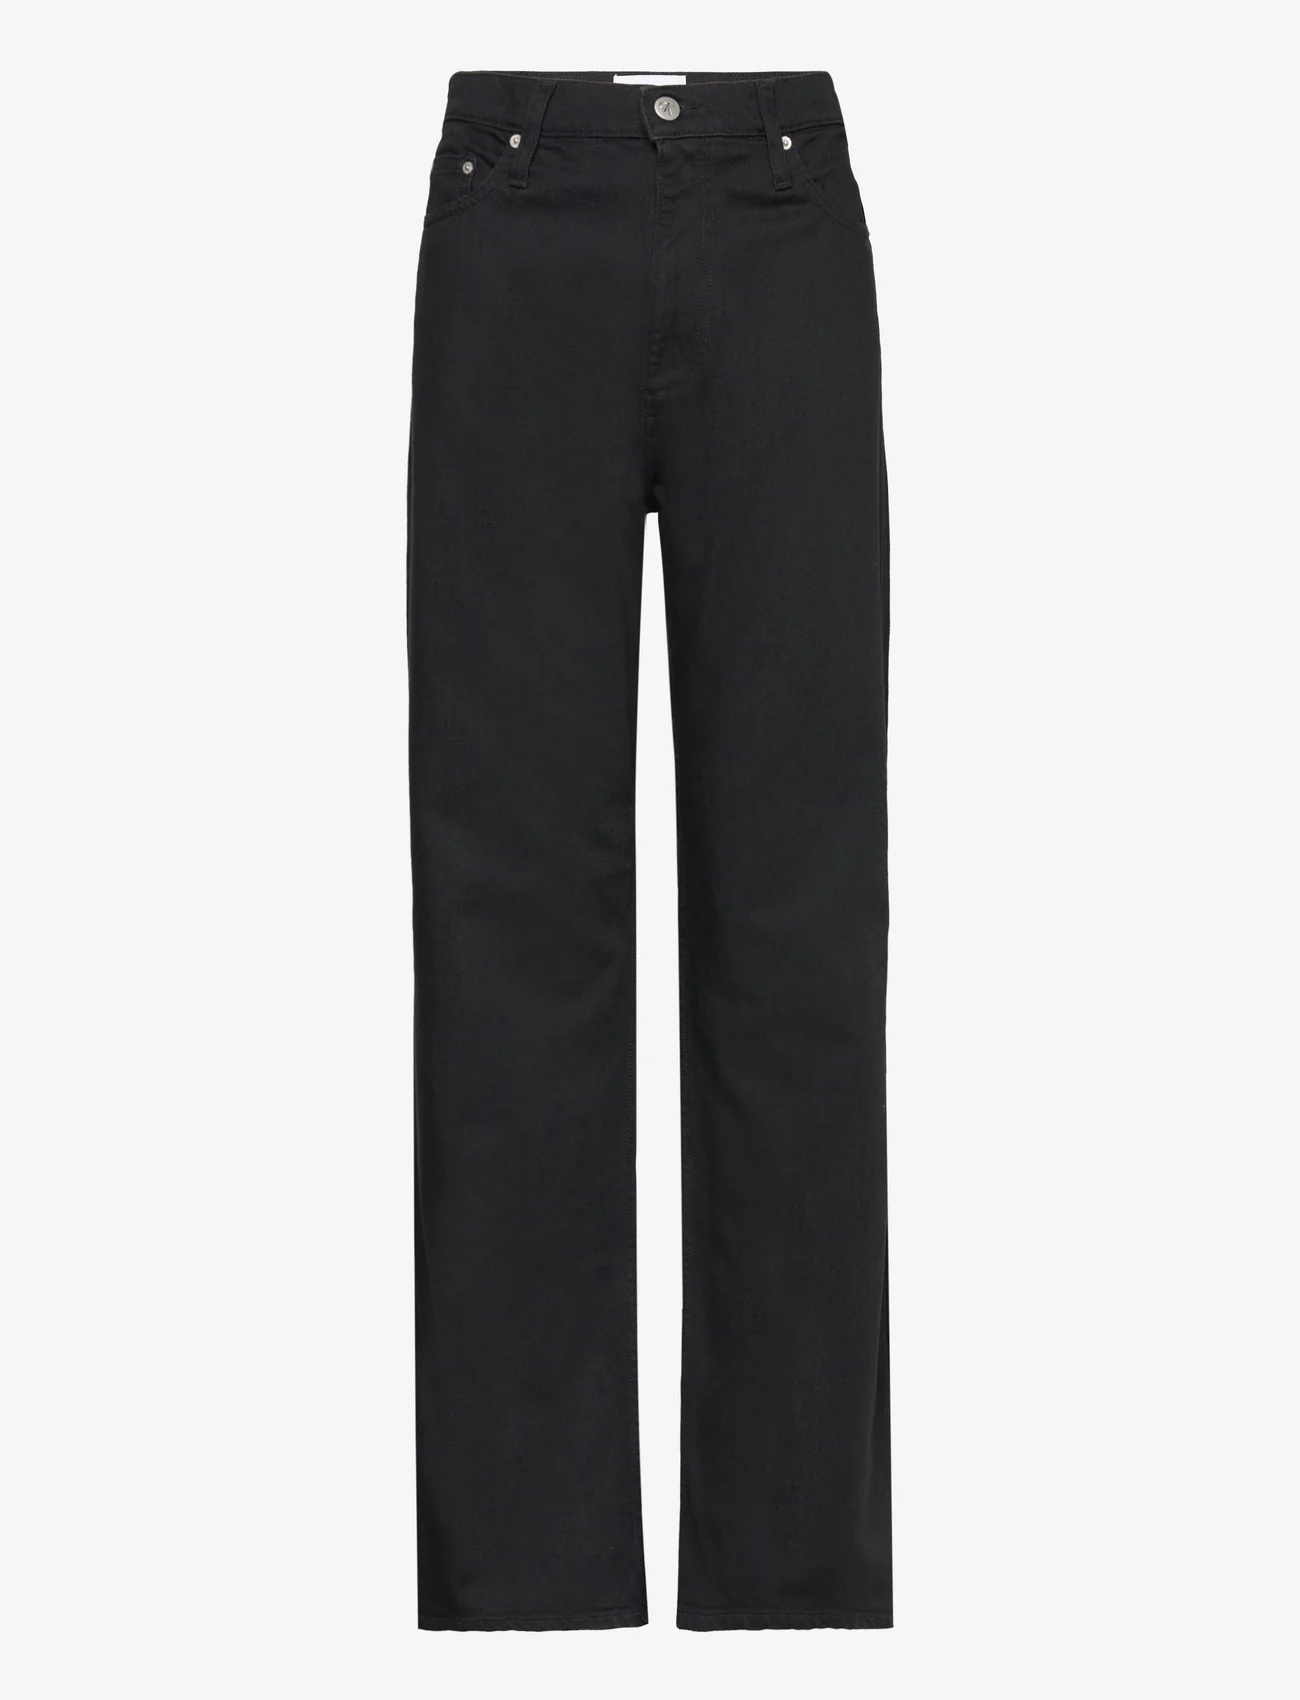 Calvin Klein Jeans - AUTHENTIC BOOTCUT - bootcut jeans - denim black - 0